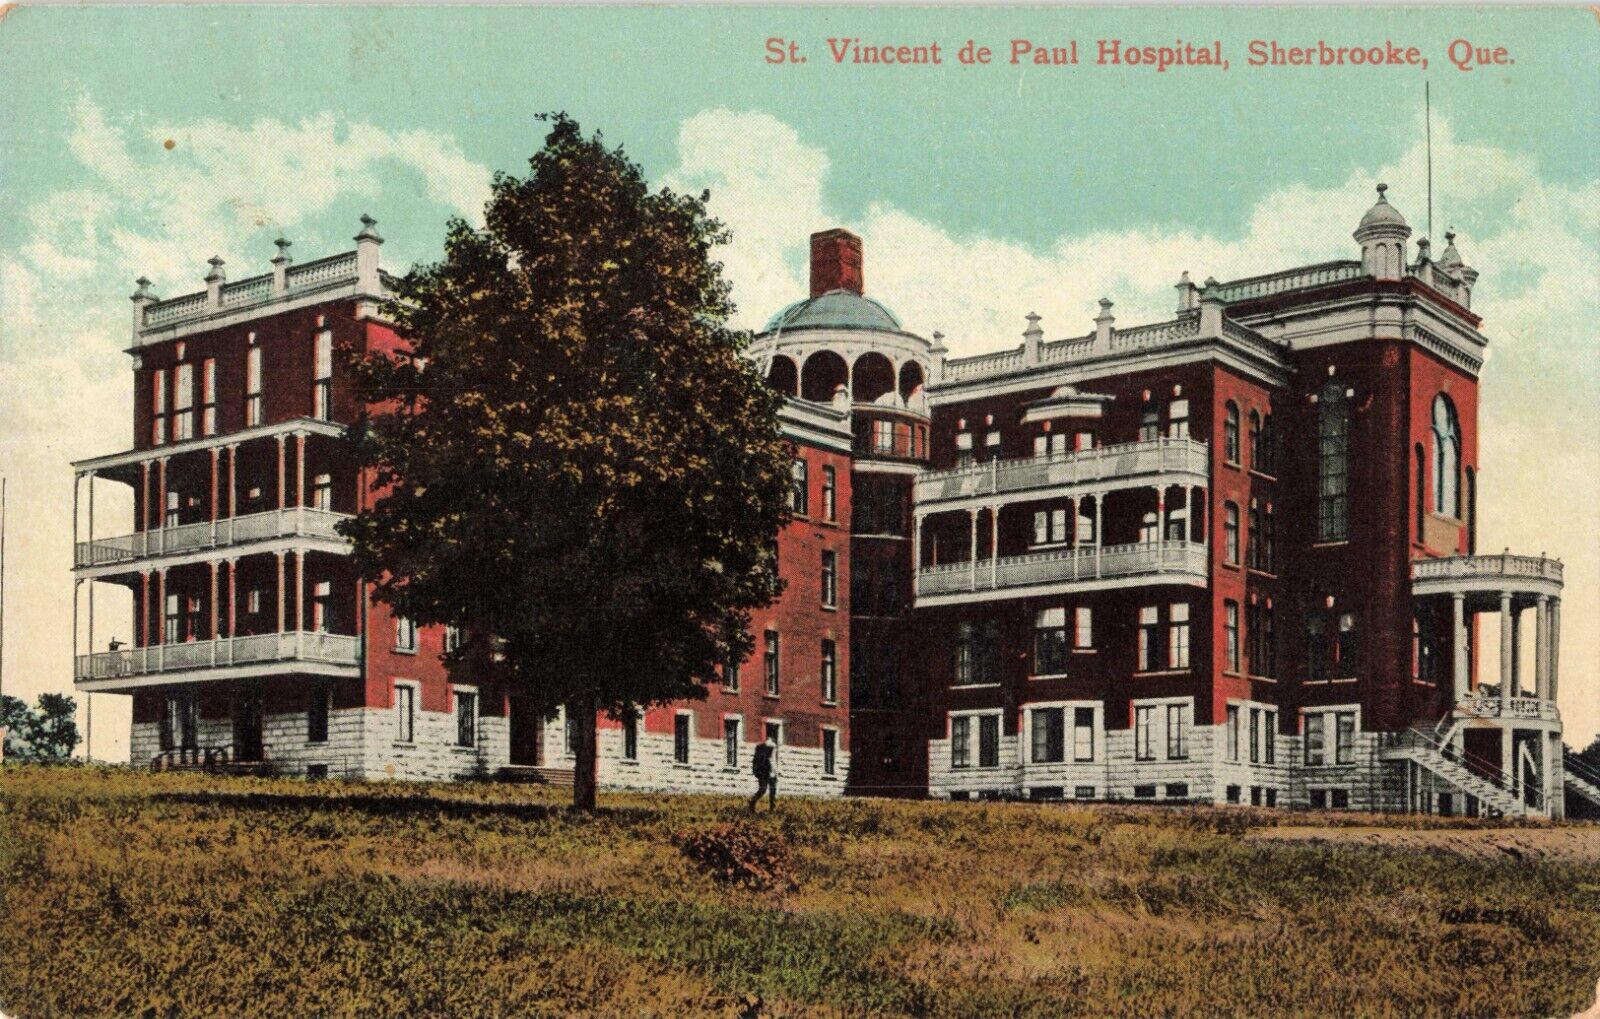 St. Vincent de Paul Hospital Sherbrooke Quebec QC Canada c1910 Postcard